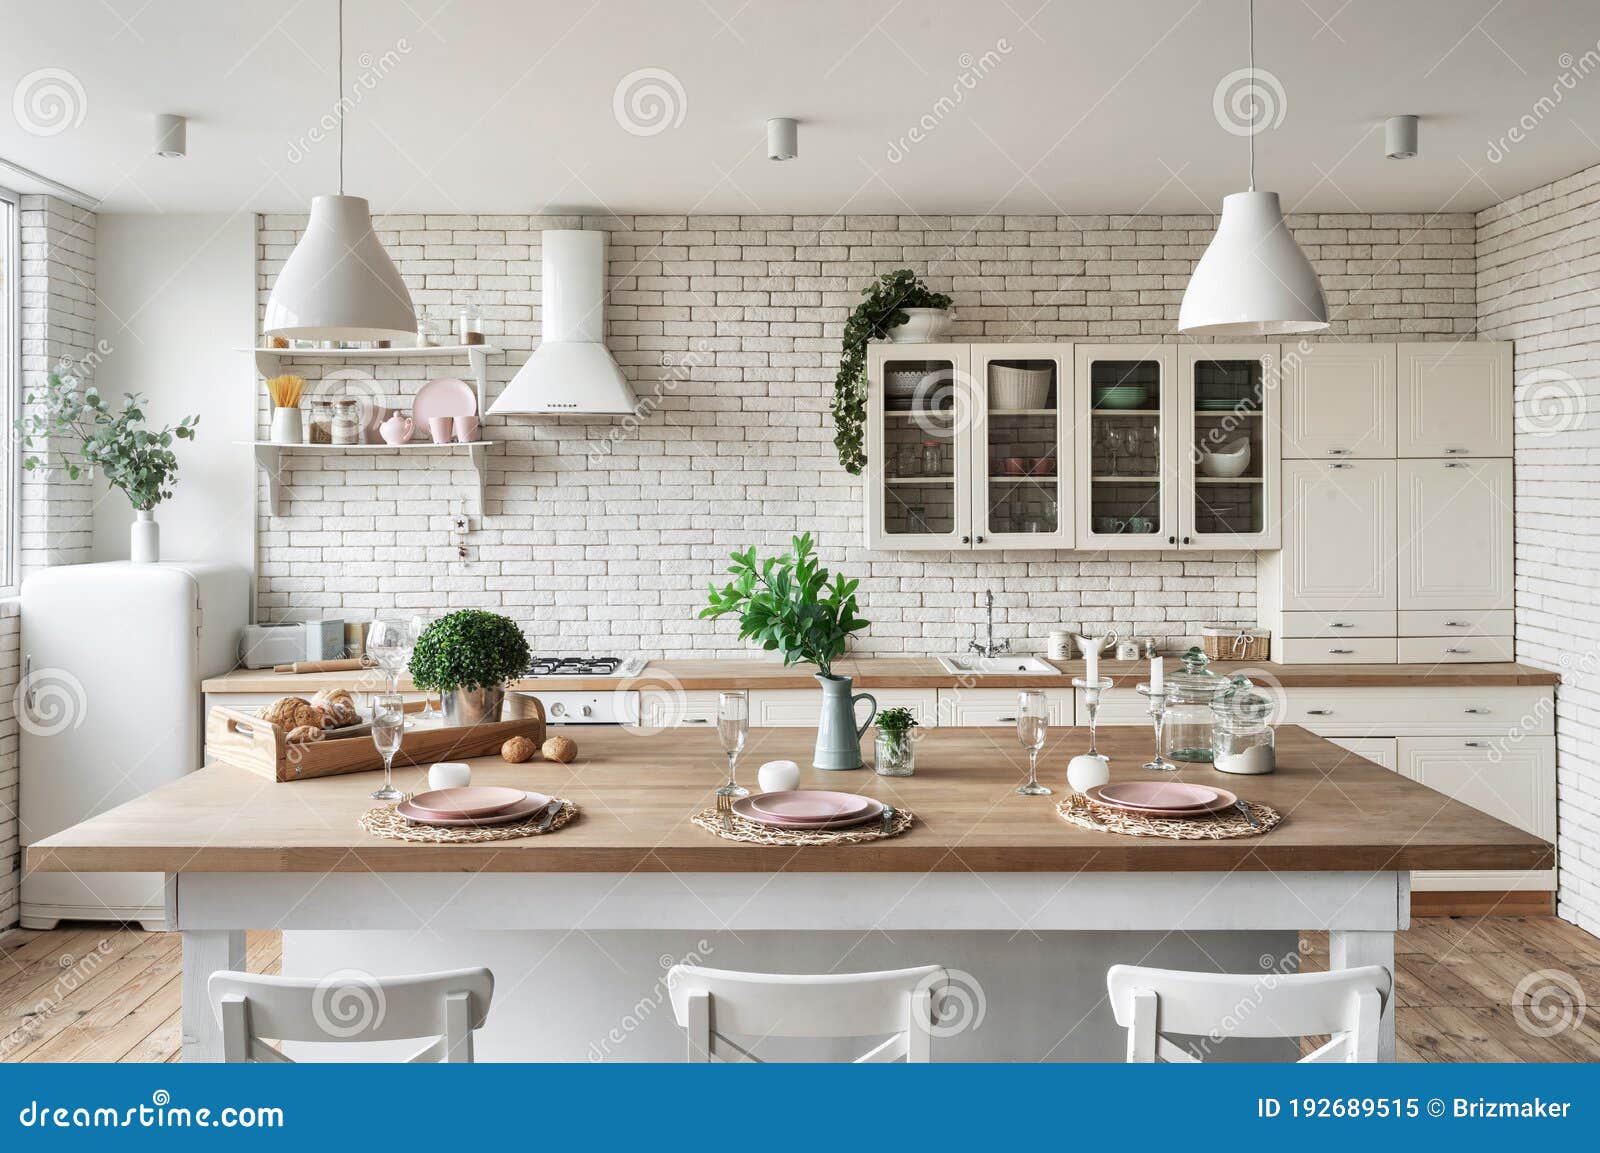 Không gian nội thất nhà bếp trắng là điểm nhấn tuyệt đẹp của căn nhà. Tông màu trắng tinh khiết tạo cảm giác sạch sẽ, mở rộng hơn cho không gian. Mỗi khi đến nhà bếp, bạn sẽ cảm thấy thư giãn và hứng thú để nấu những món ăn ngon.